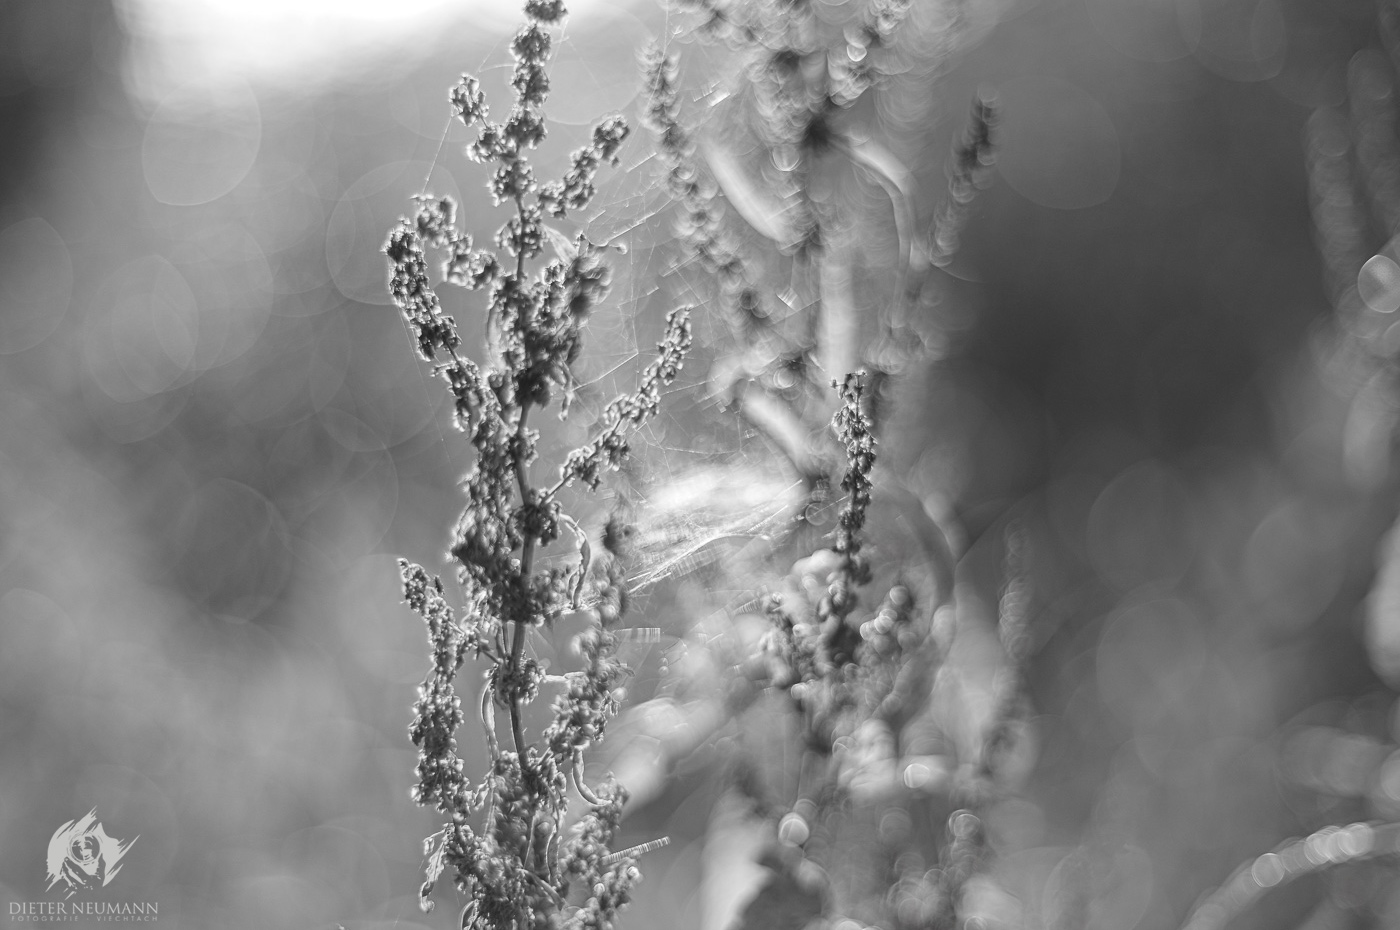 Manuelle Lichtmalerei in der Natur ... bei Blende 1.4 in schwarz-weiß. - Nikon Z7 - Zeiss Planar 50mm f1.4 | © dieter-neumann-fotografie.de